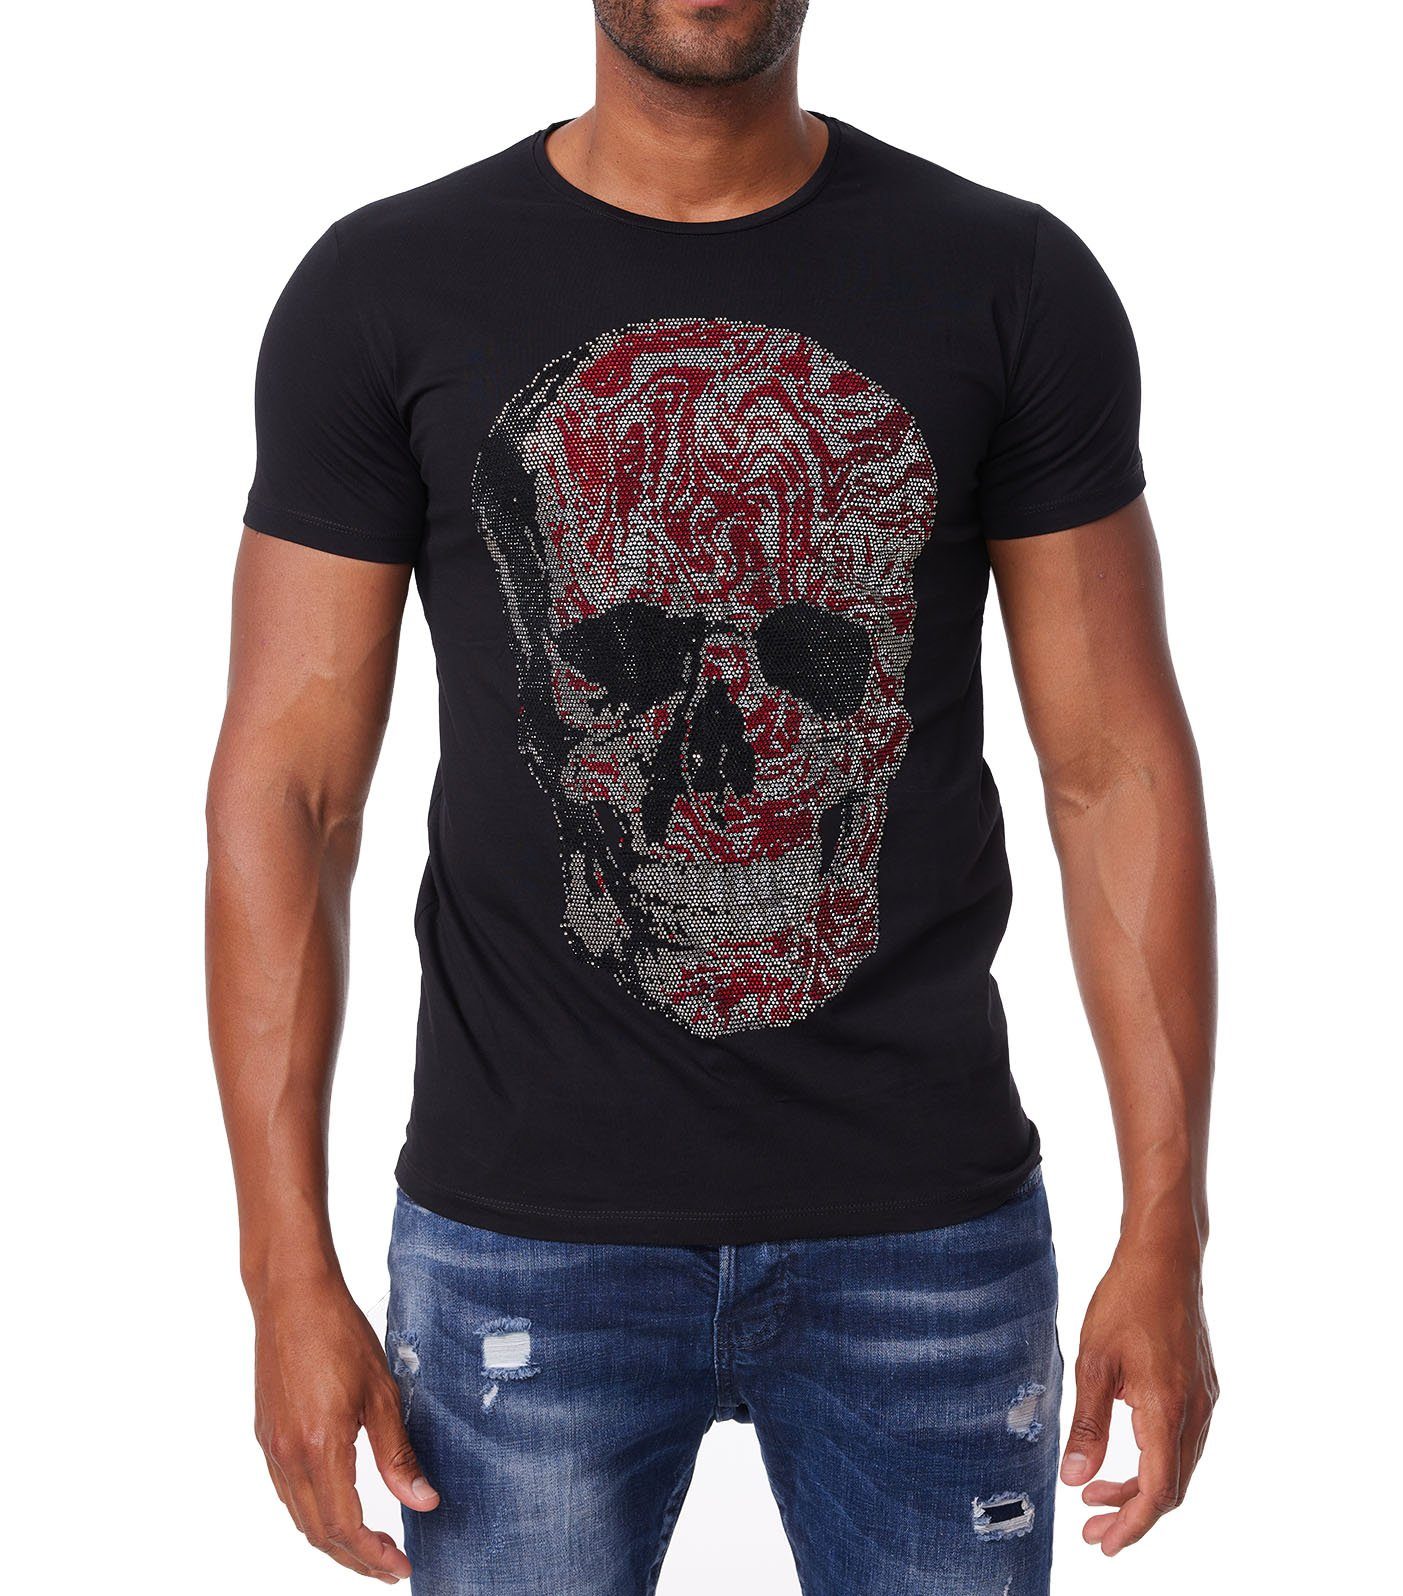 TRUENO T-Shirt Herren Totenkopf T-Shirt mit Strass Slim-Fit Sommer Shirt DH-T16